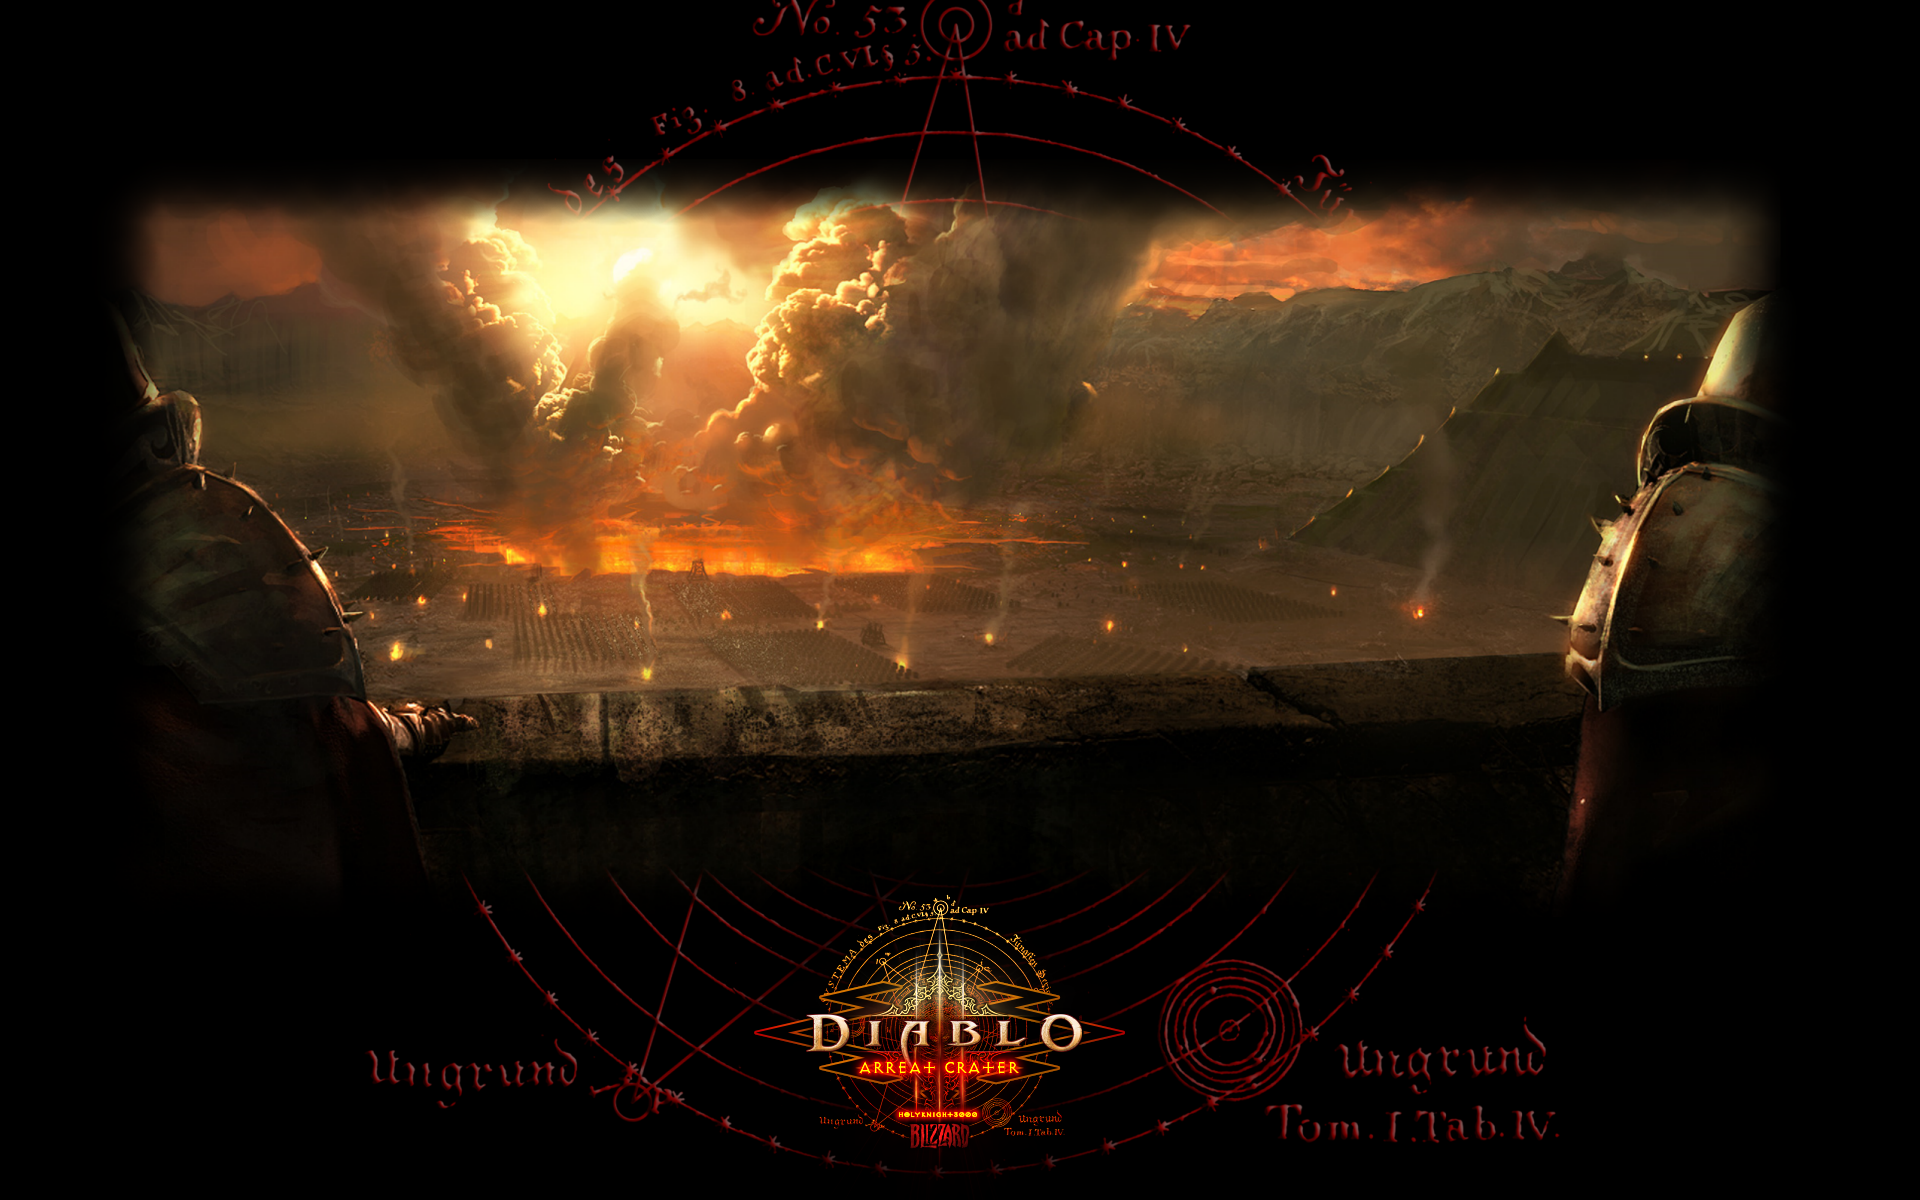 D3WS #03 - Arreat Crater